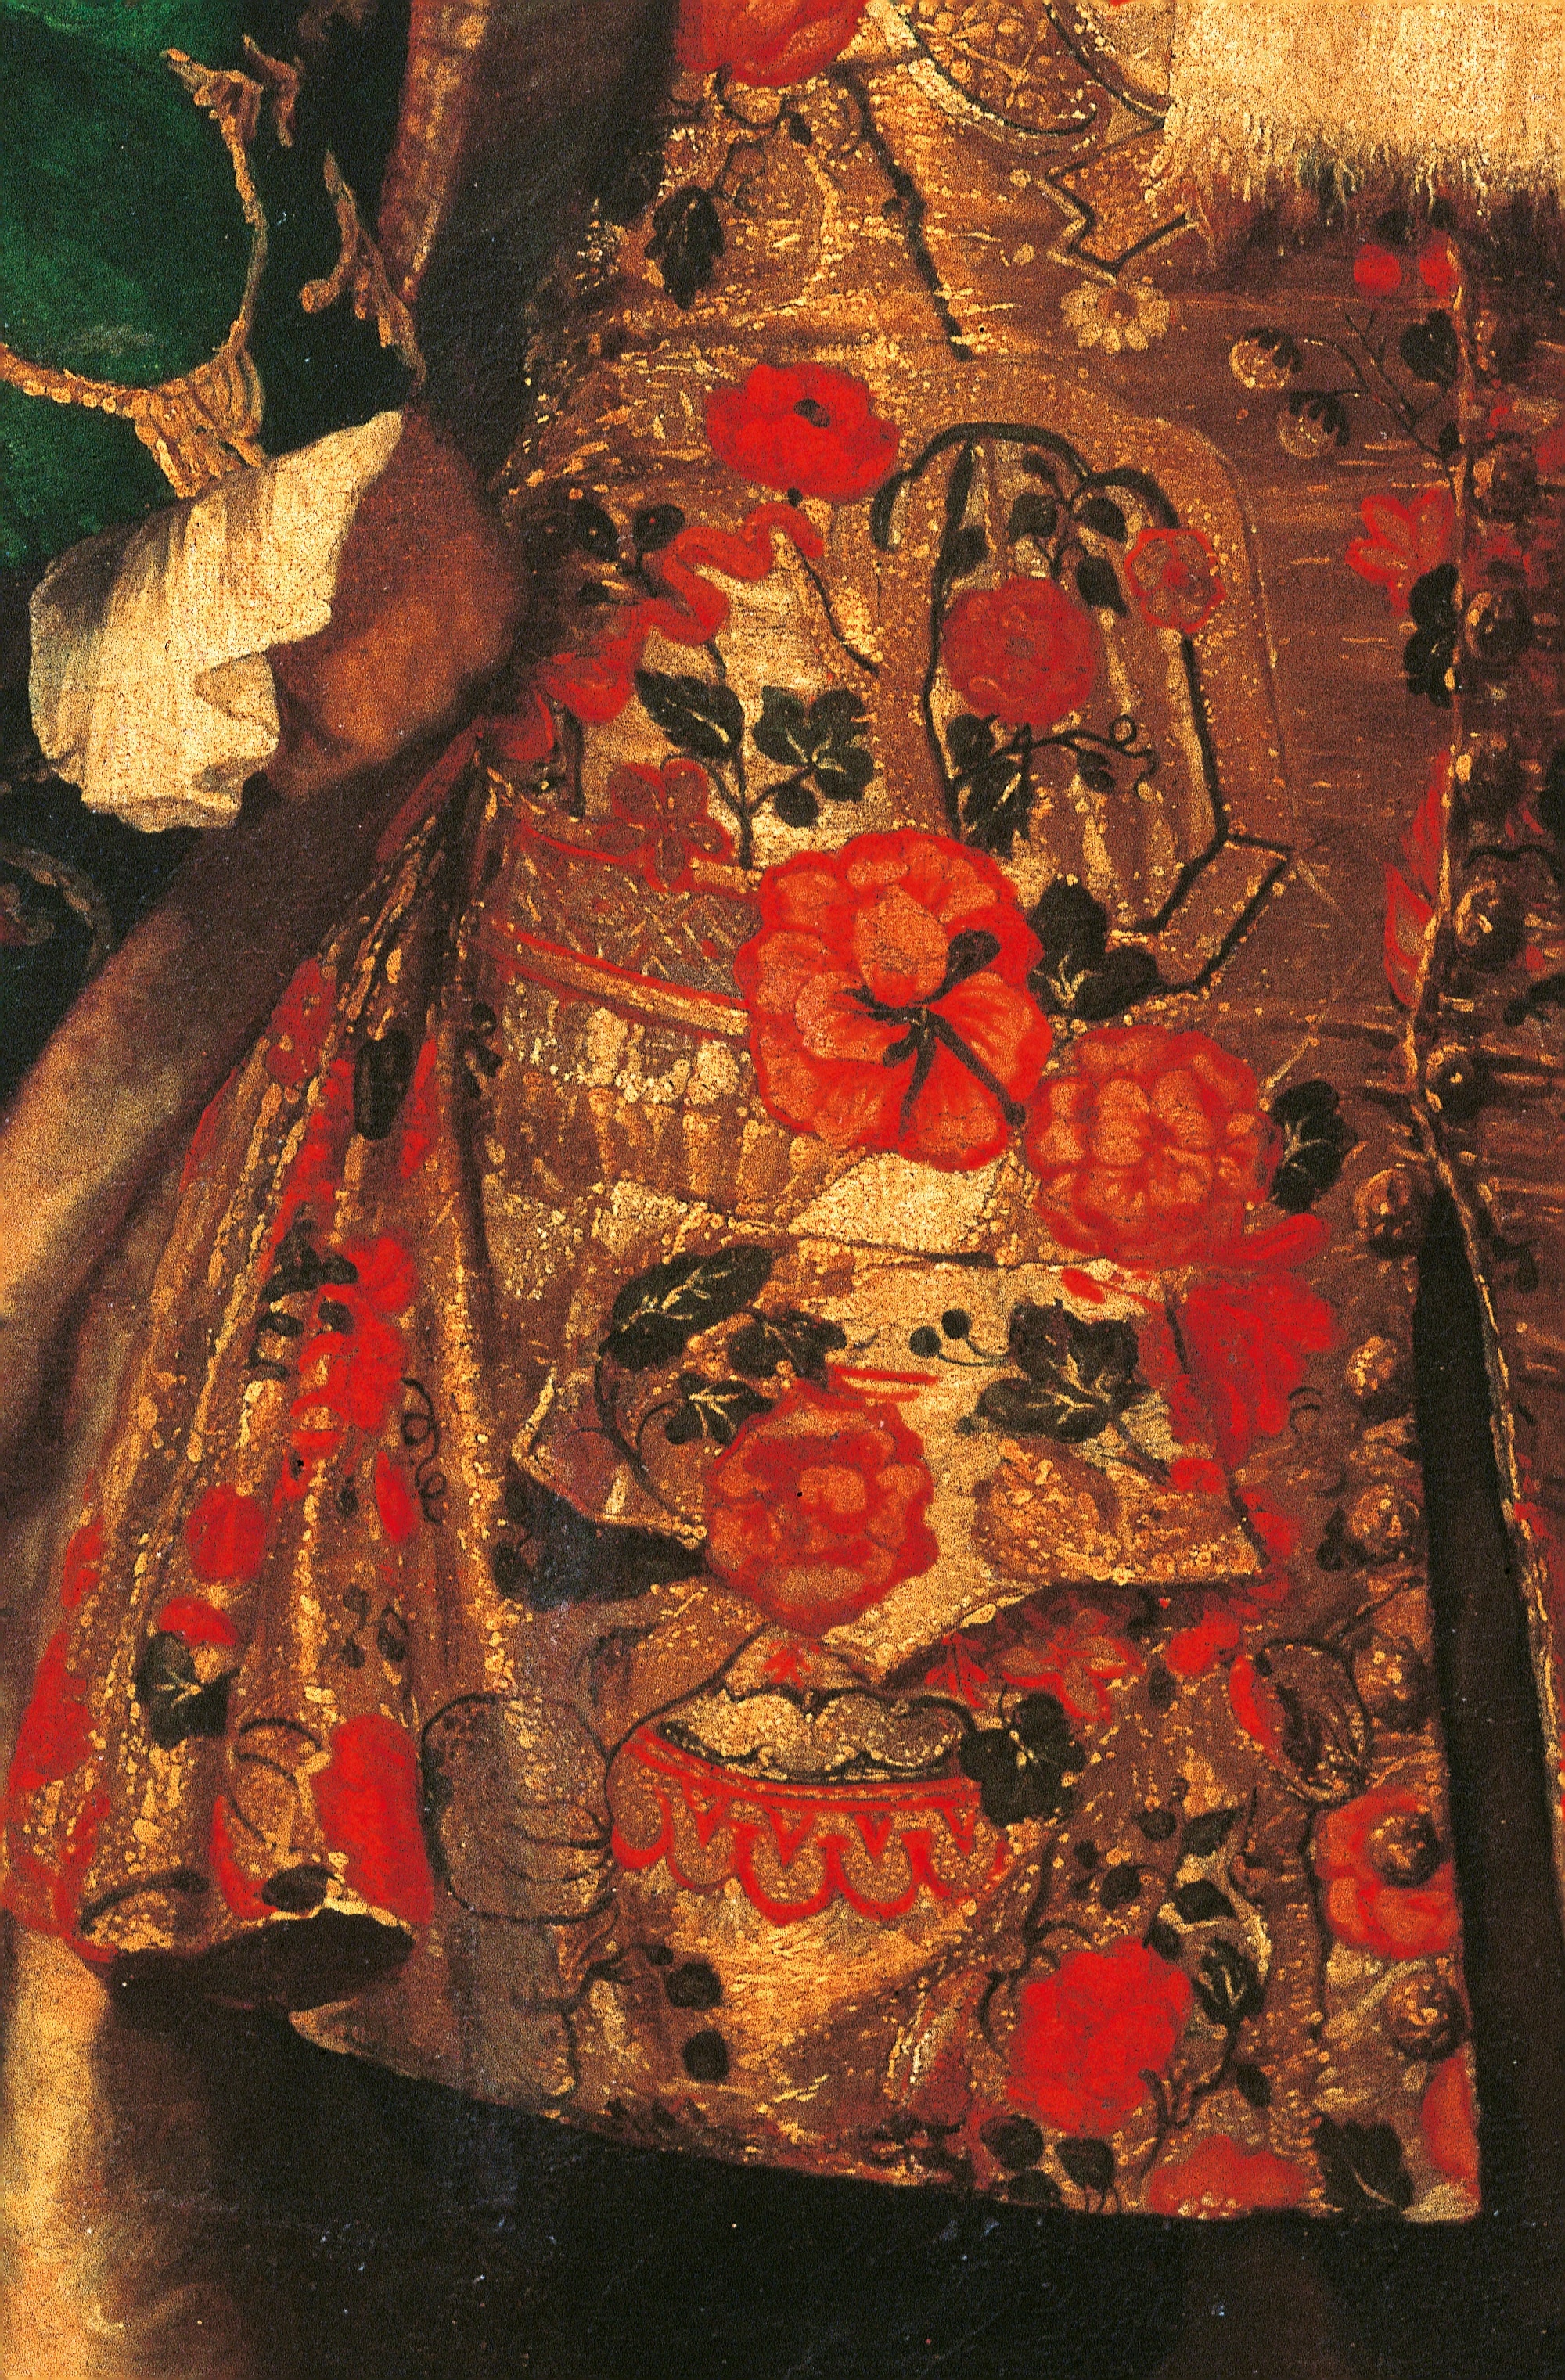 Fra' Galgario, Dettaglio abito del Ritratto del conte Giovanni Battista Vailetti, 1710-‘20, olio su tela, 230x137cm., Gallerie dell’Academia, Venezia